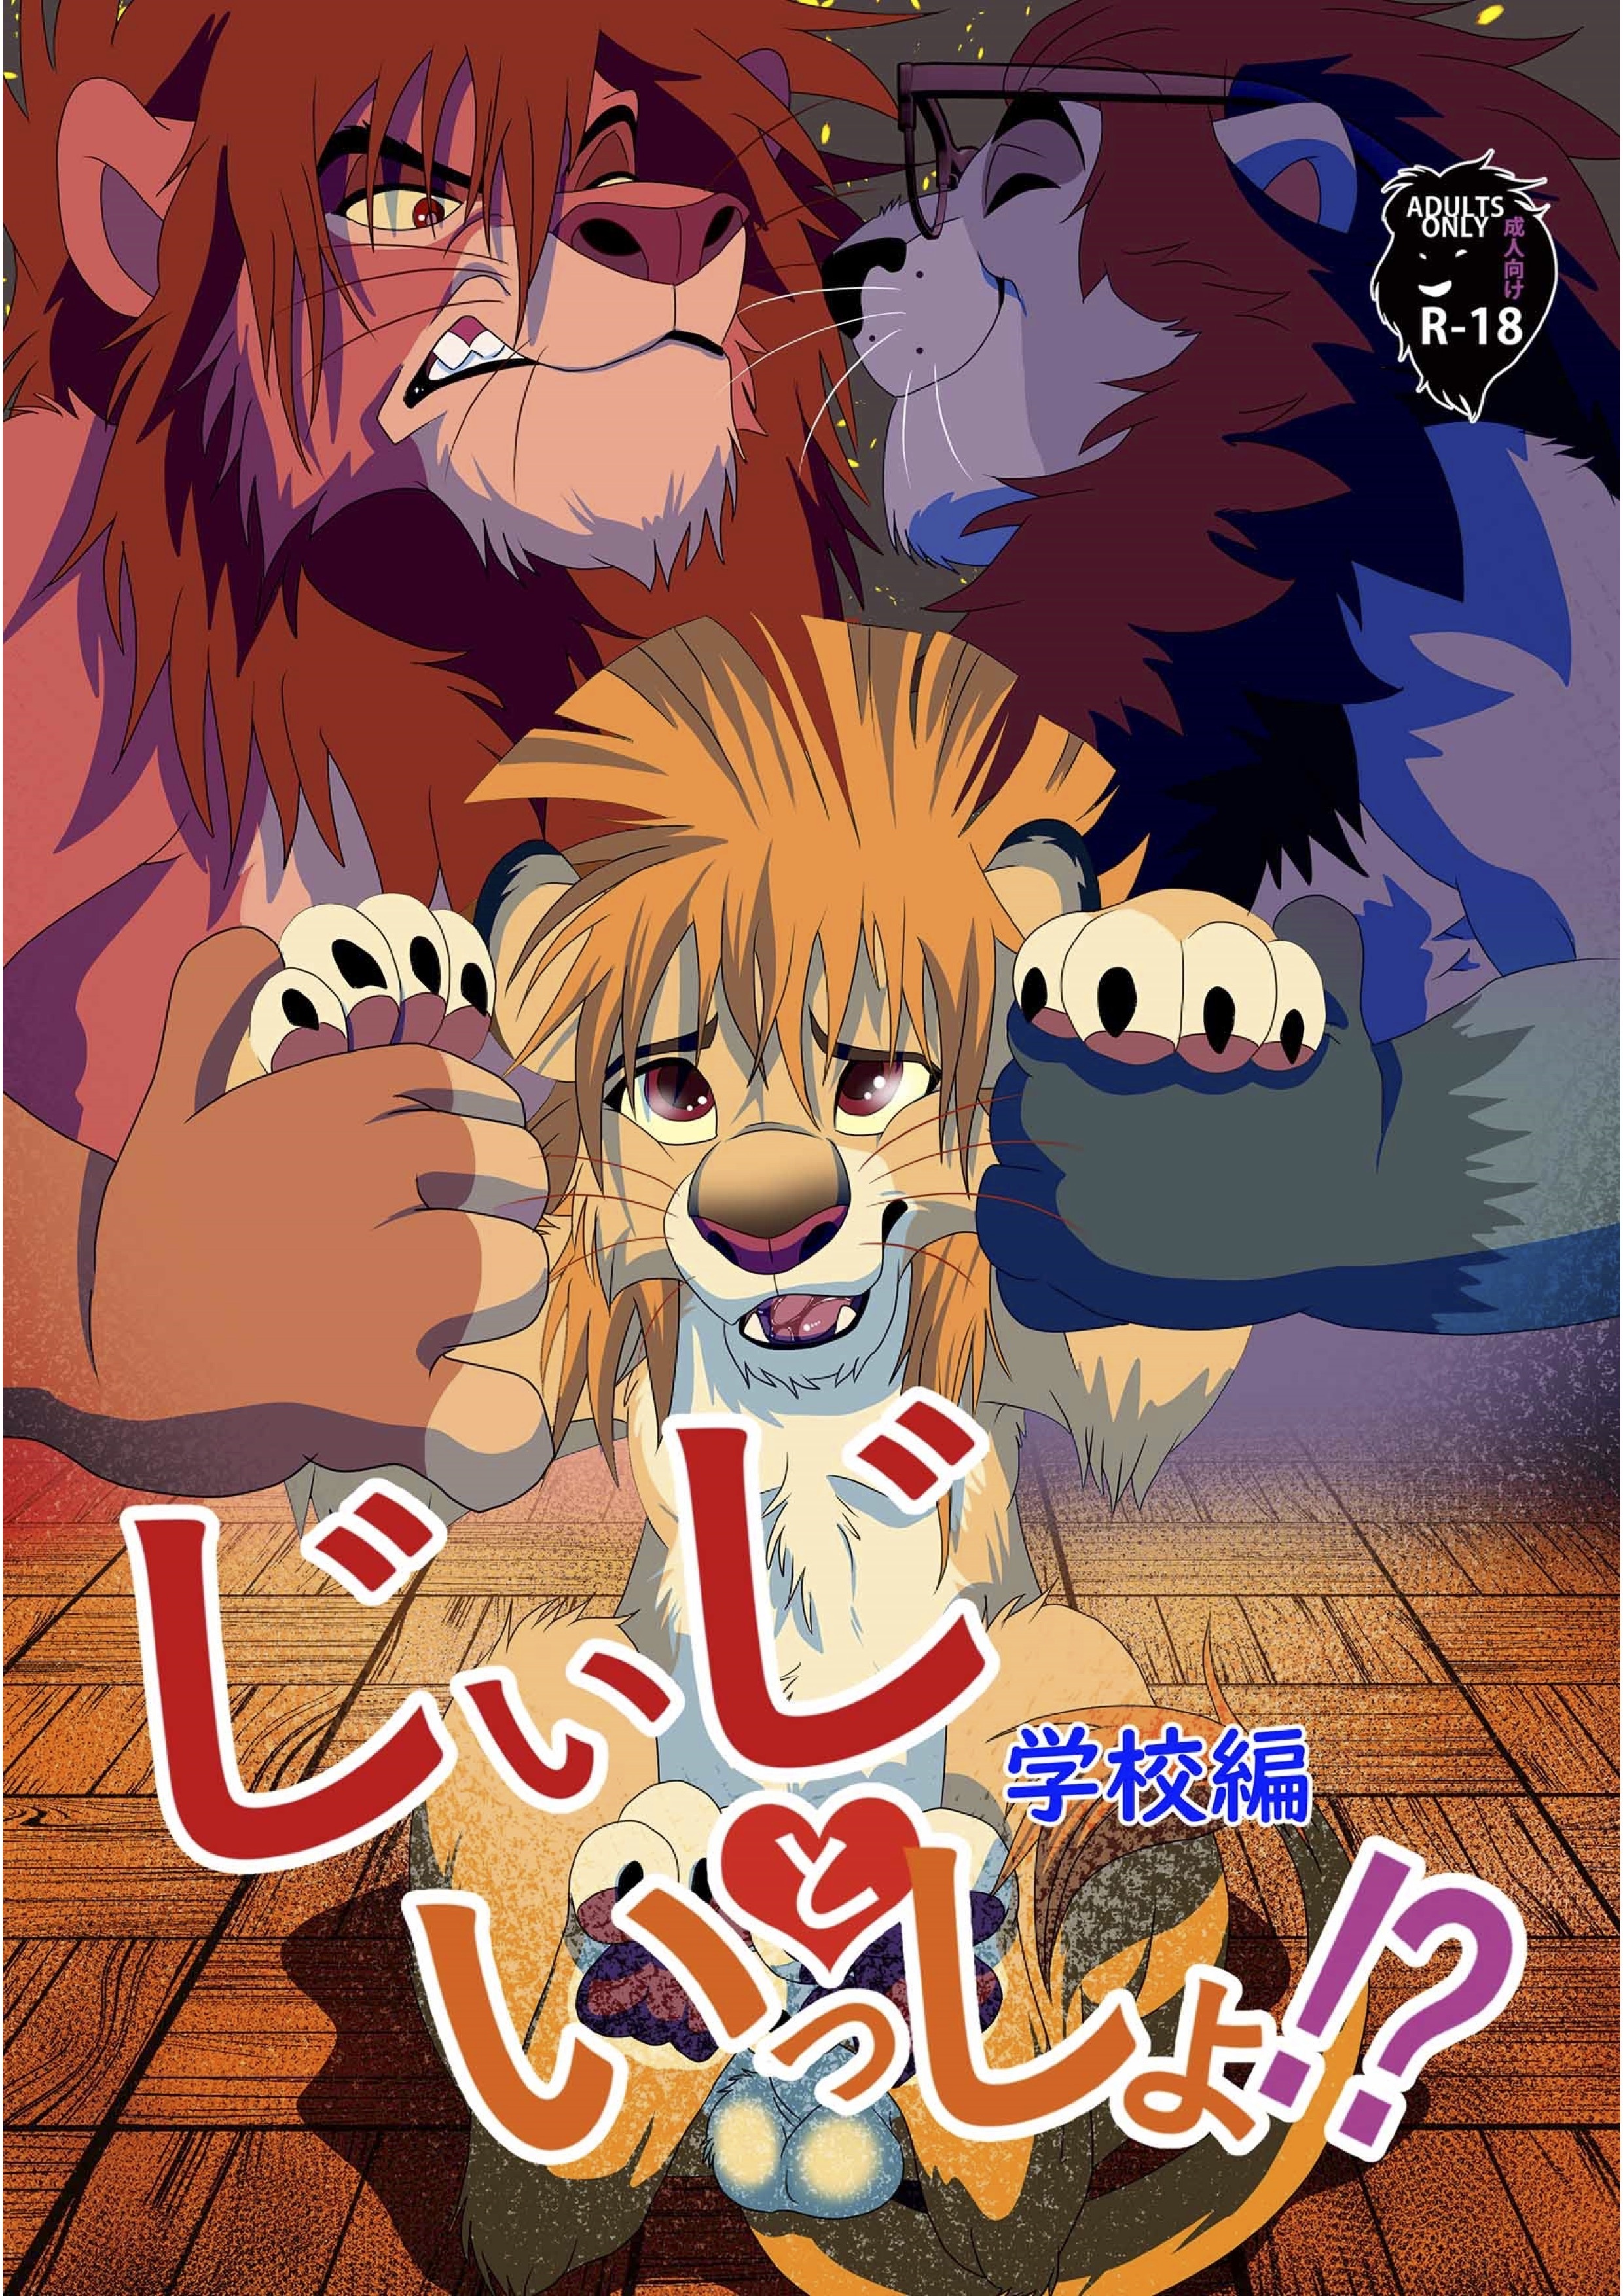 Lion King Cartoon Porn - the lion king - Hentai Manga, Doujins, XXX & Anime Porn